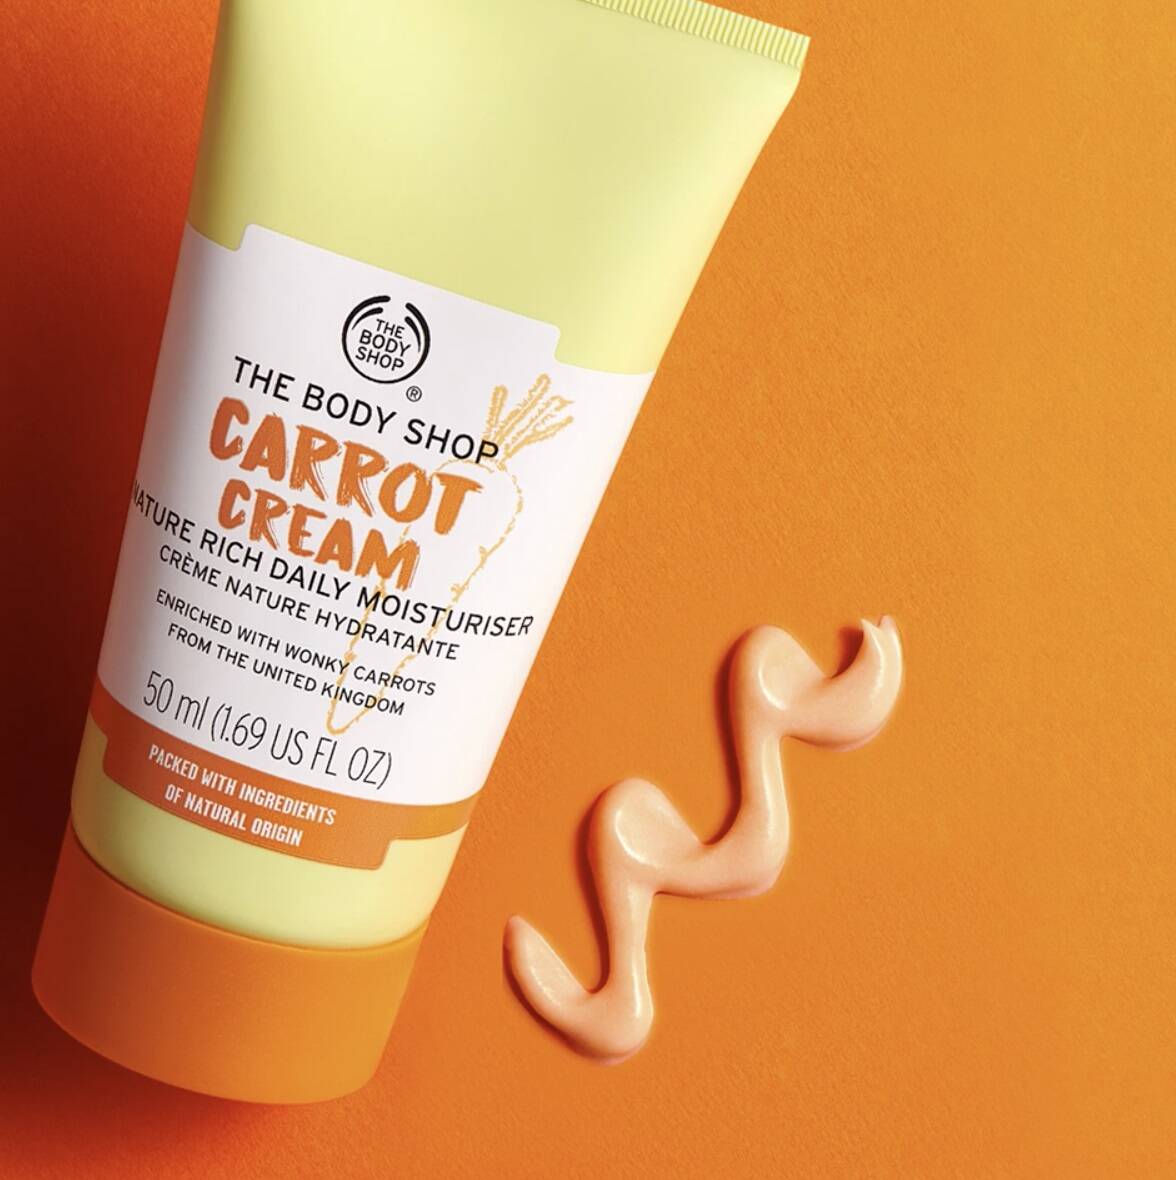 کرم روزانه مرطوب کننده هویج بادی شاپ اصل The Body Shop Carrot Cream حجم 50 میل | روشن کننده و آبرسانی 72 ساعته ایده آل برای پوست نرمال تا خشک، دهیدراته و کدر